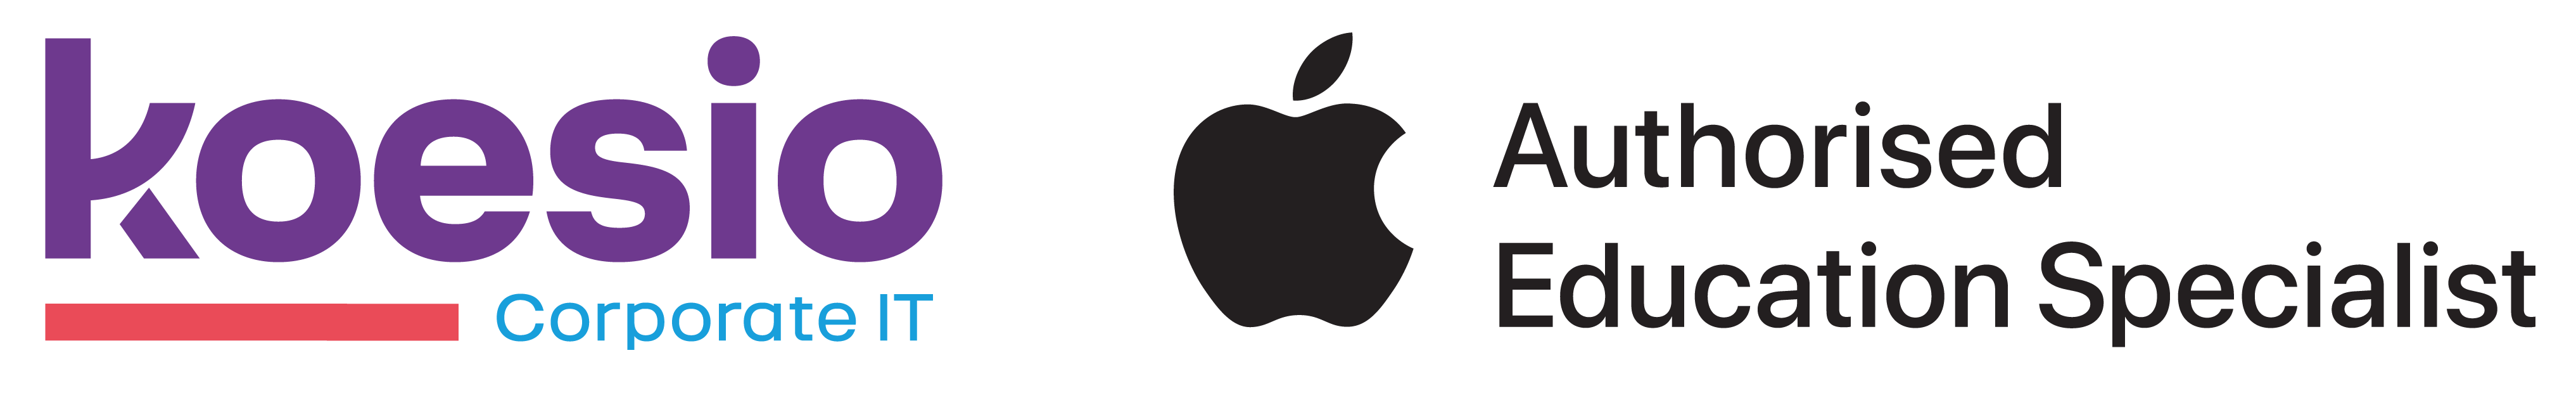 Apple Authorised Education Specialist Koesio